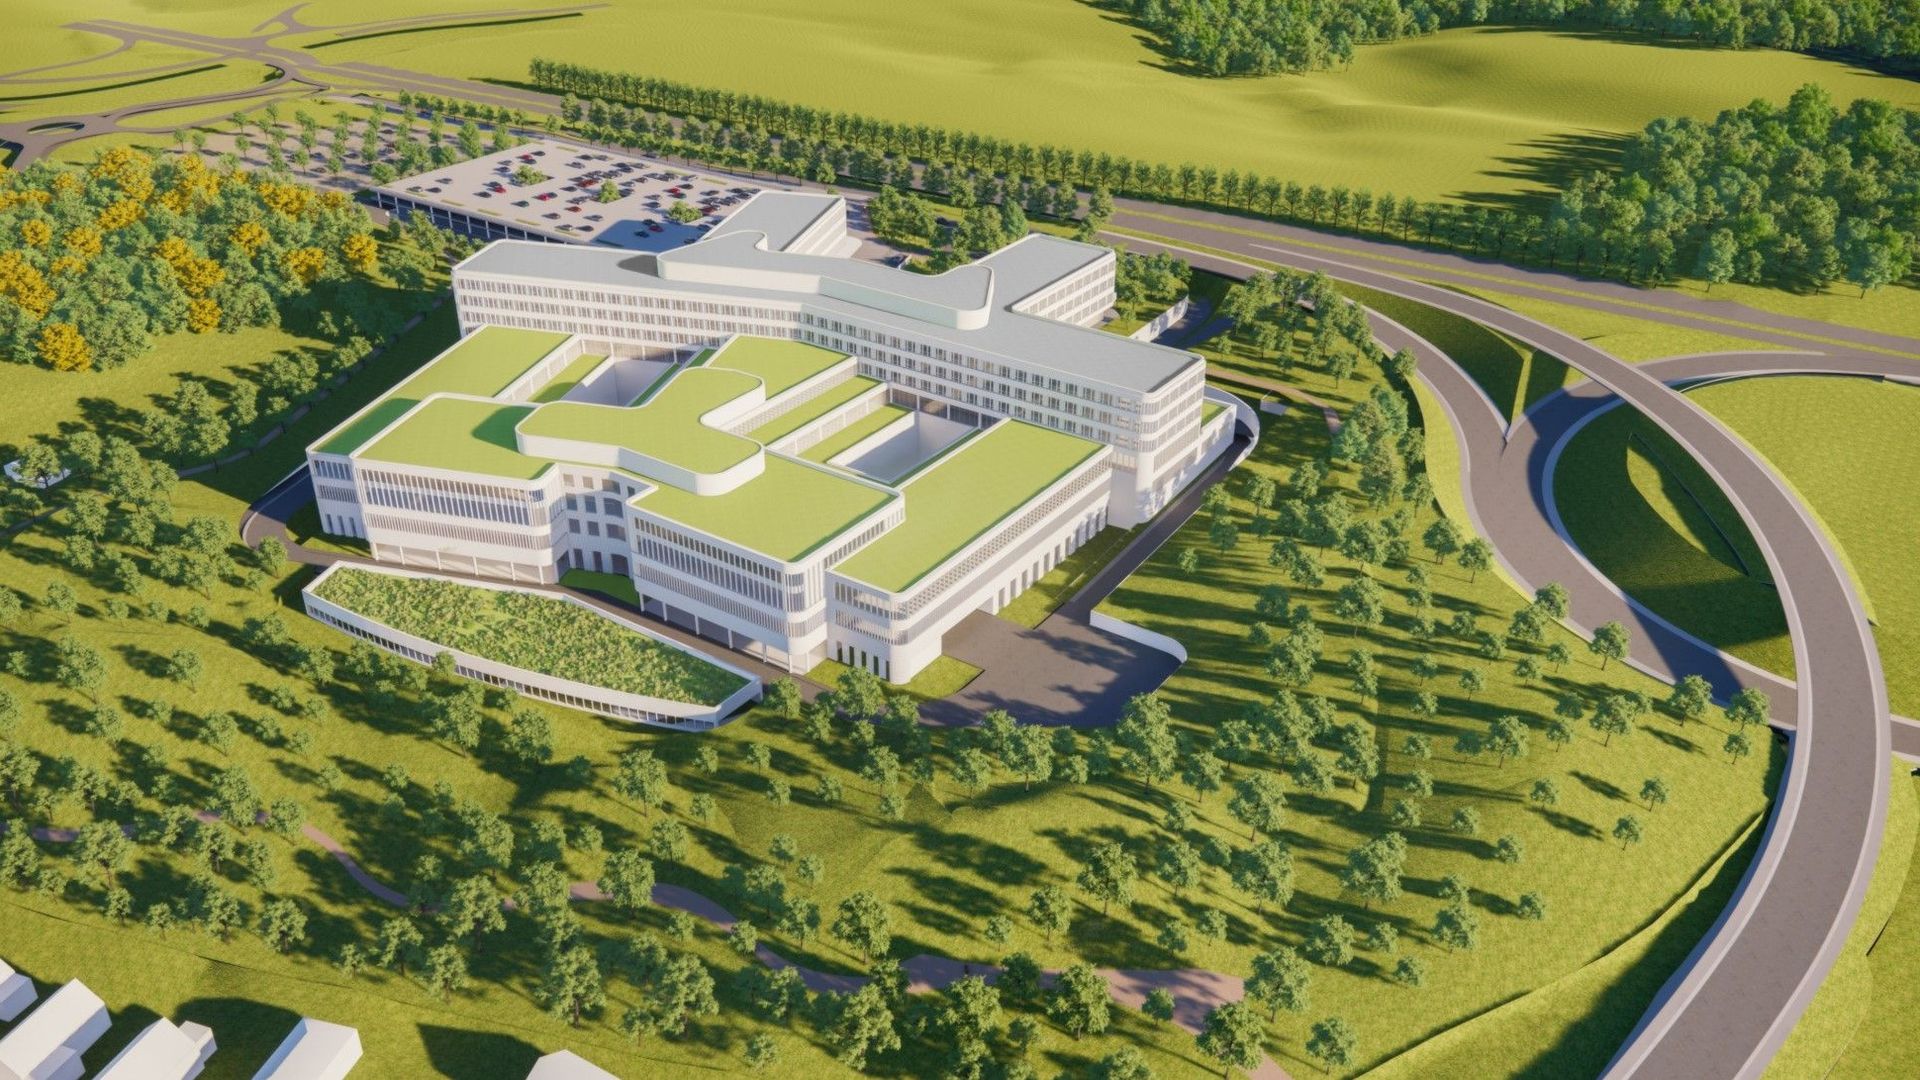 La future clinique Saint-Pierre, entourée de verdure: c'est la promesse d'un hôpital au jardin, bien intégré dans le paysage. Les riverains seront-ils convaincus?